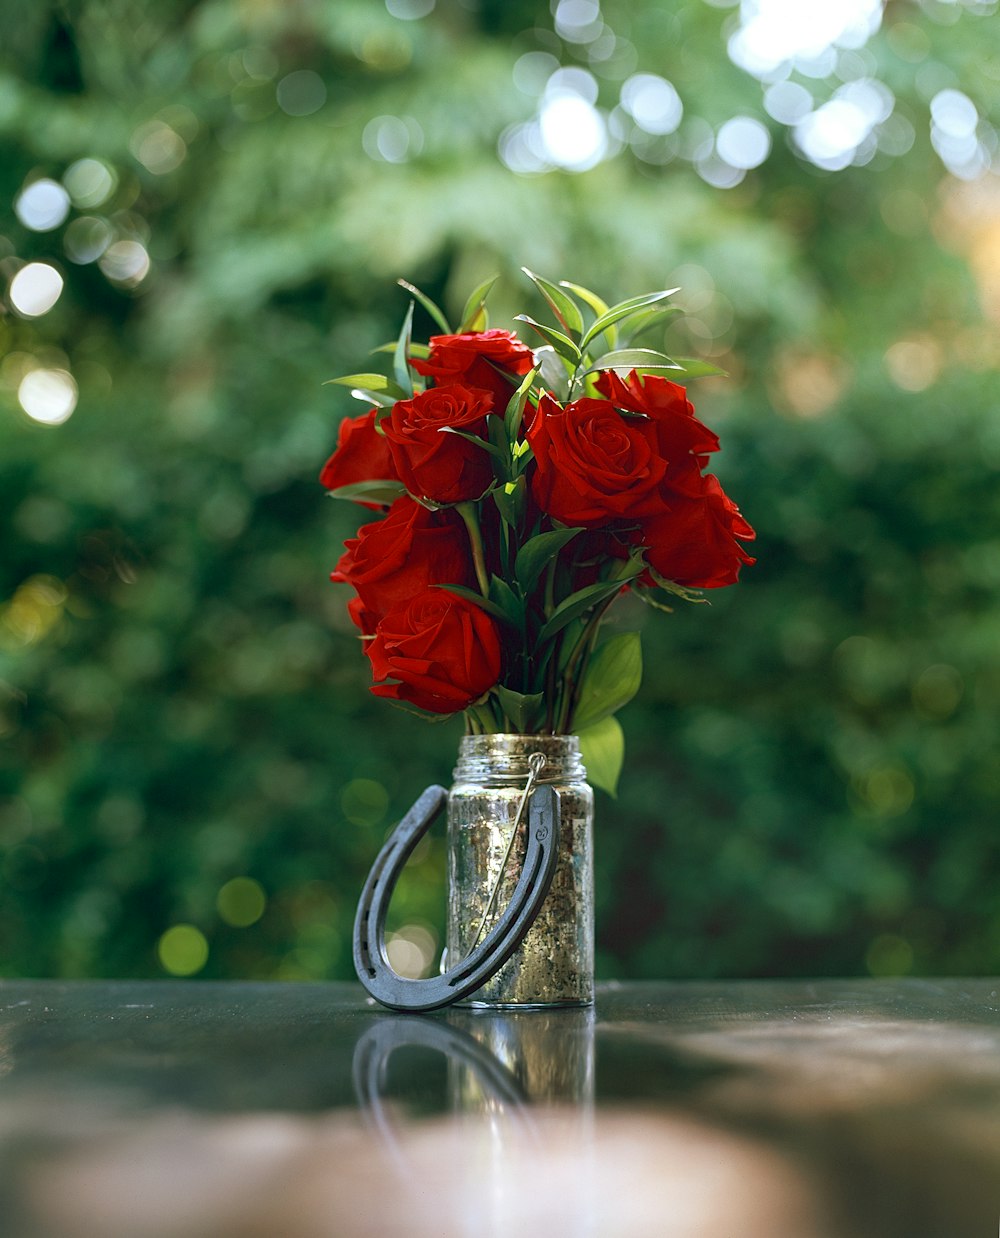 Rose rouge dans un vase en verre transparent